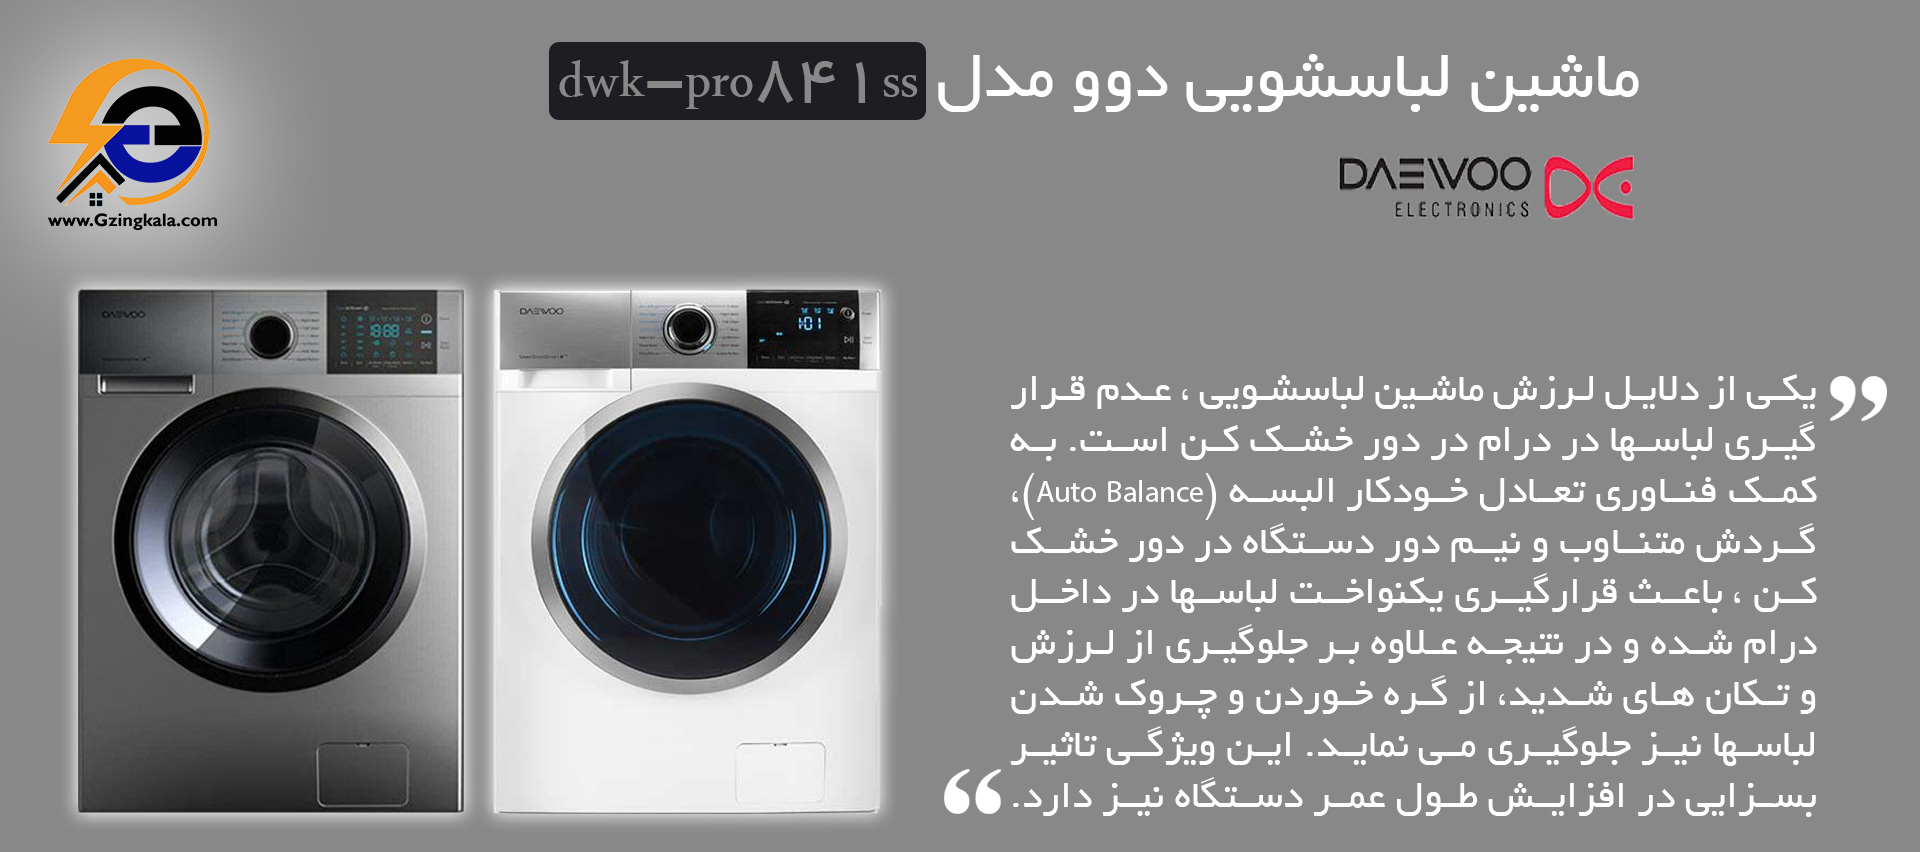 ماشین لباسشویی دوو مدل dwk-pro841ss